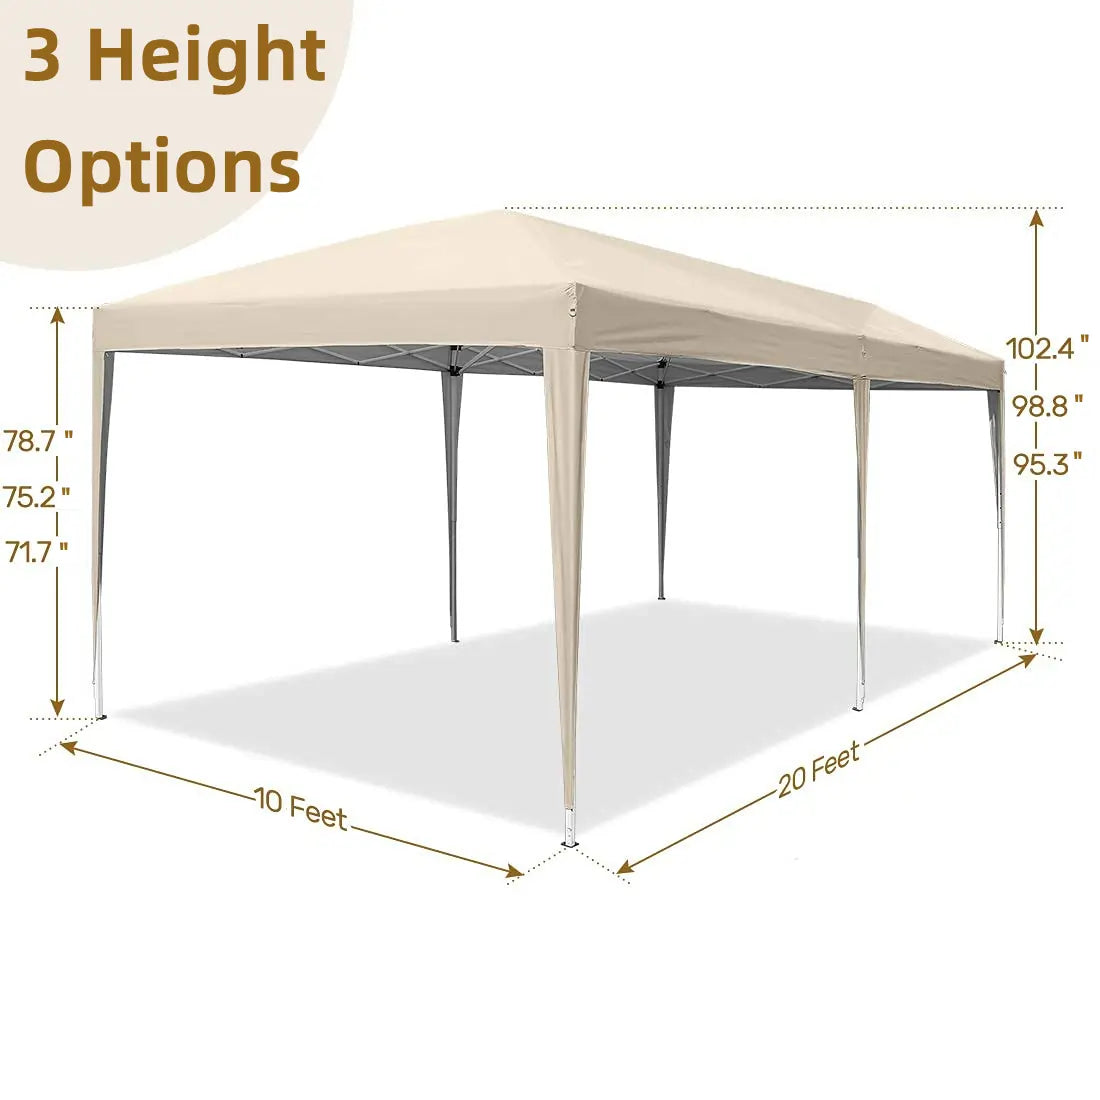 10x20 pop up tent size#color_beige